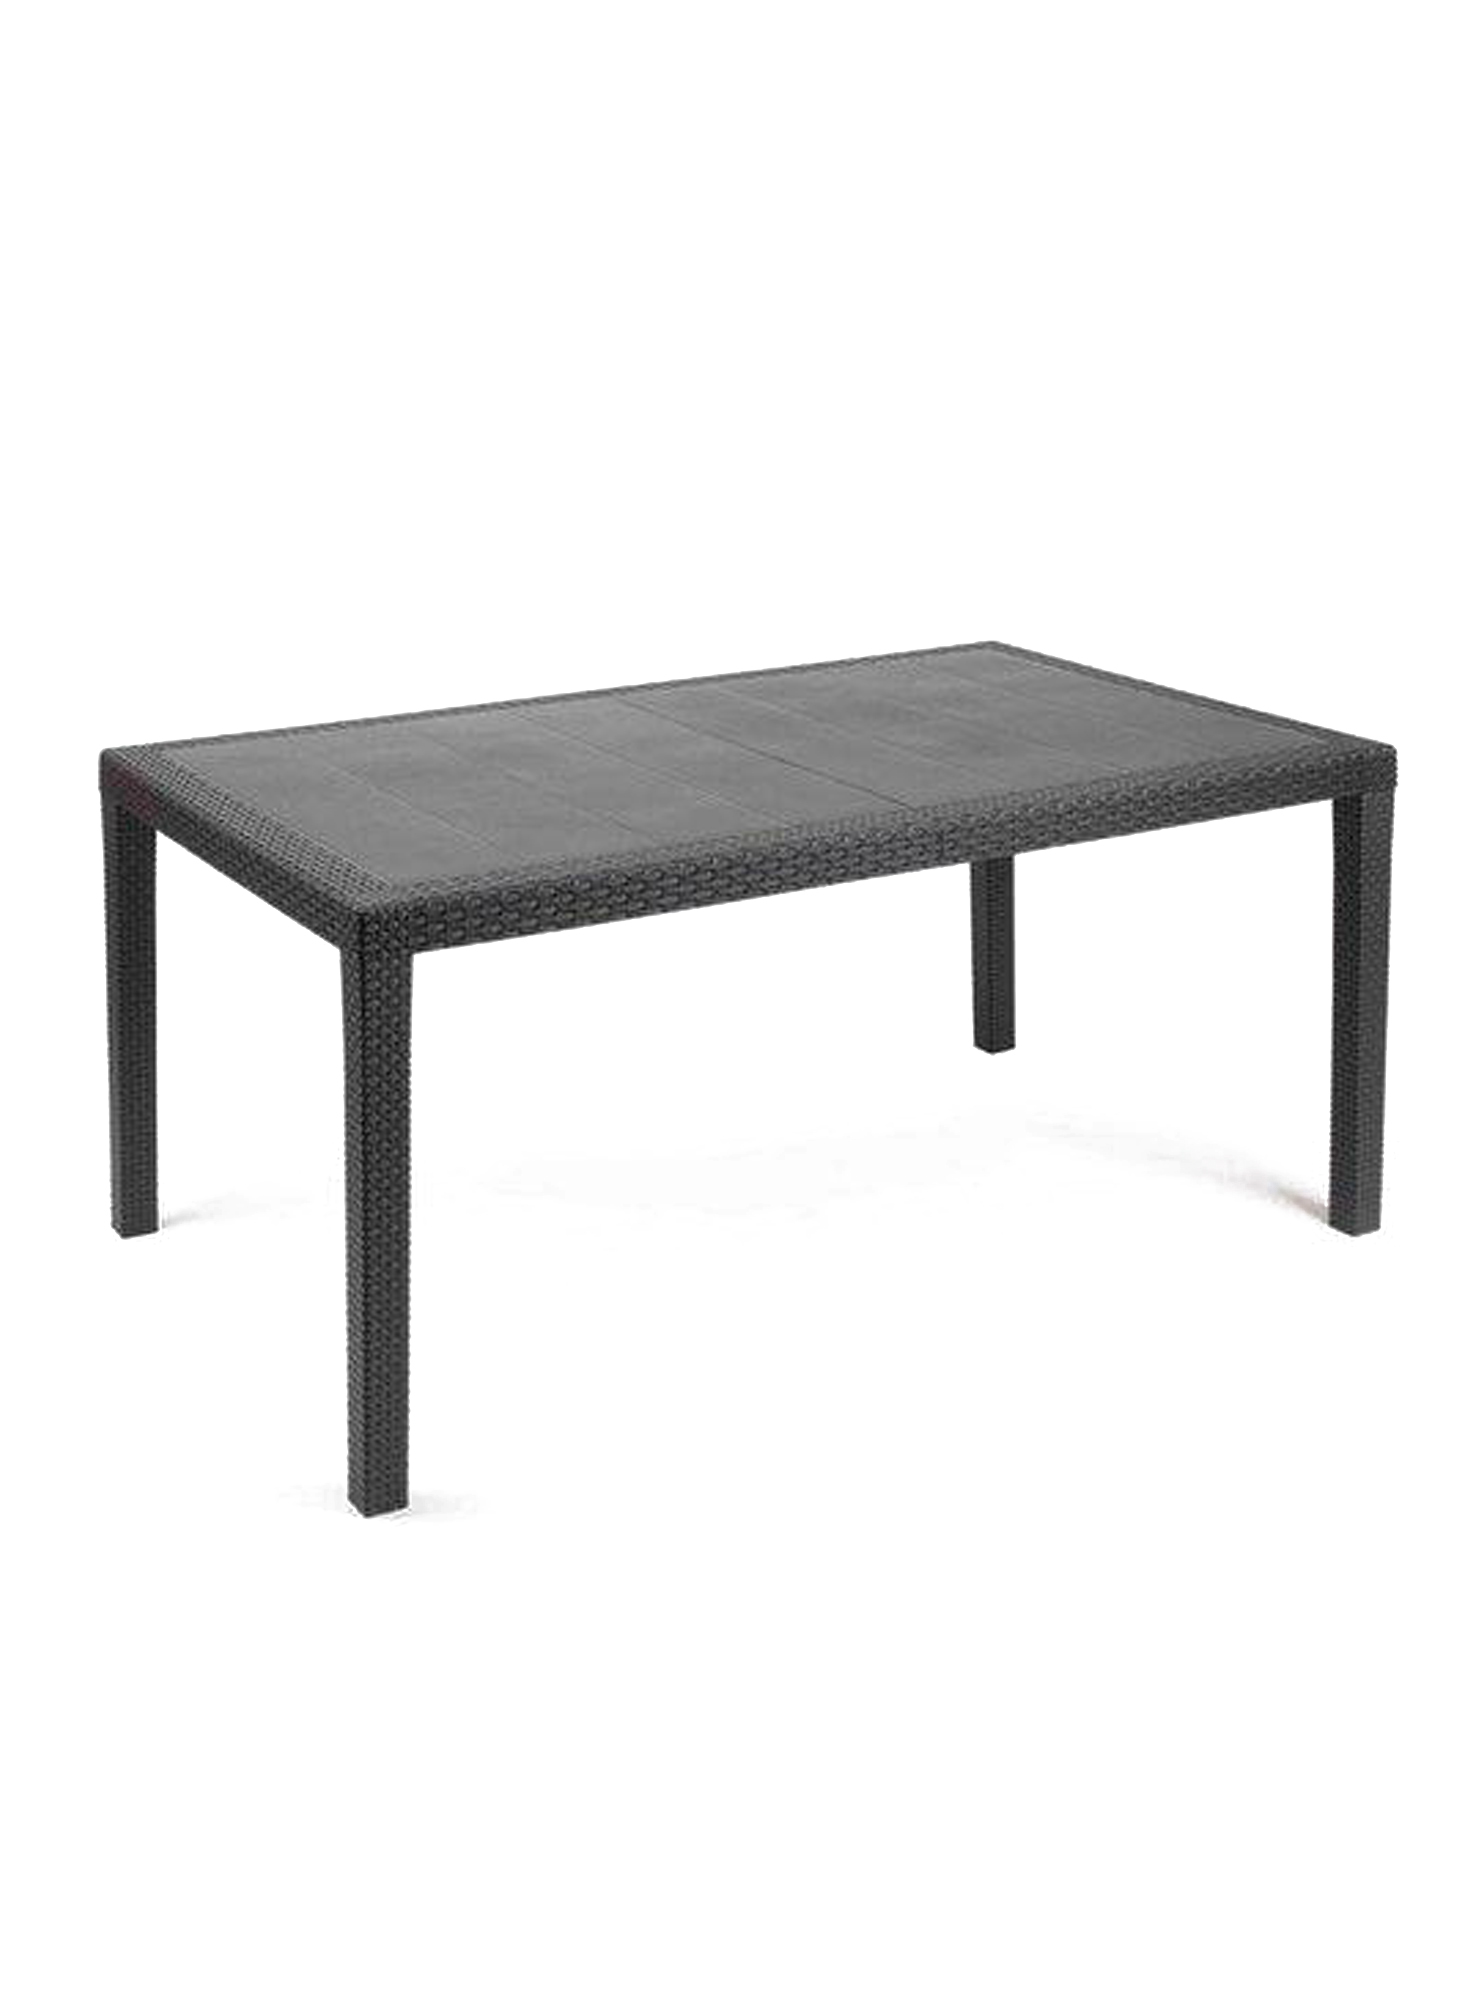 Table d'extérieur fixe en pvc anthracite 138x78h72 cm